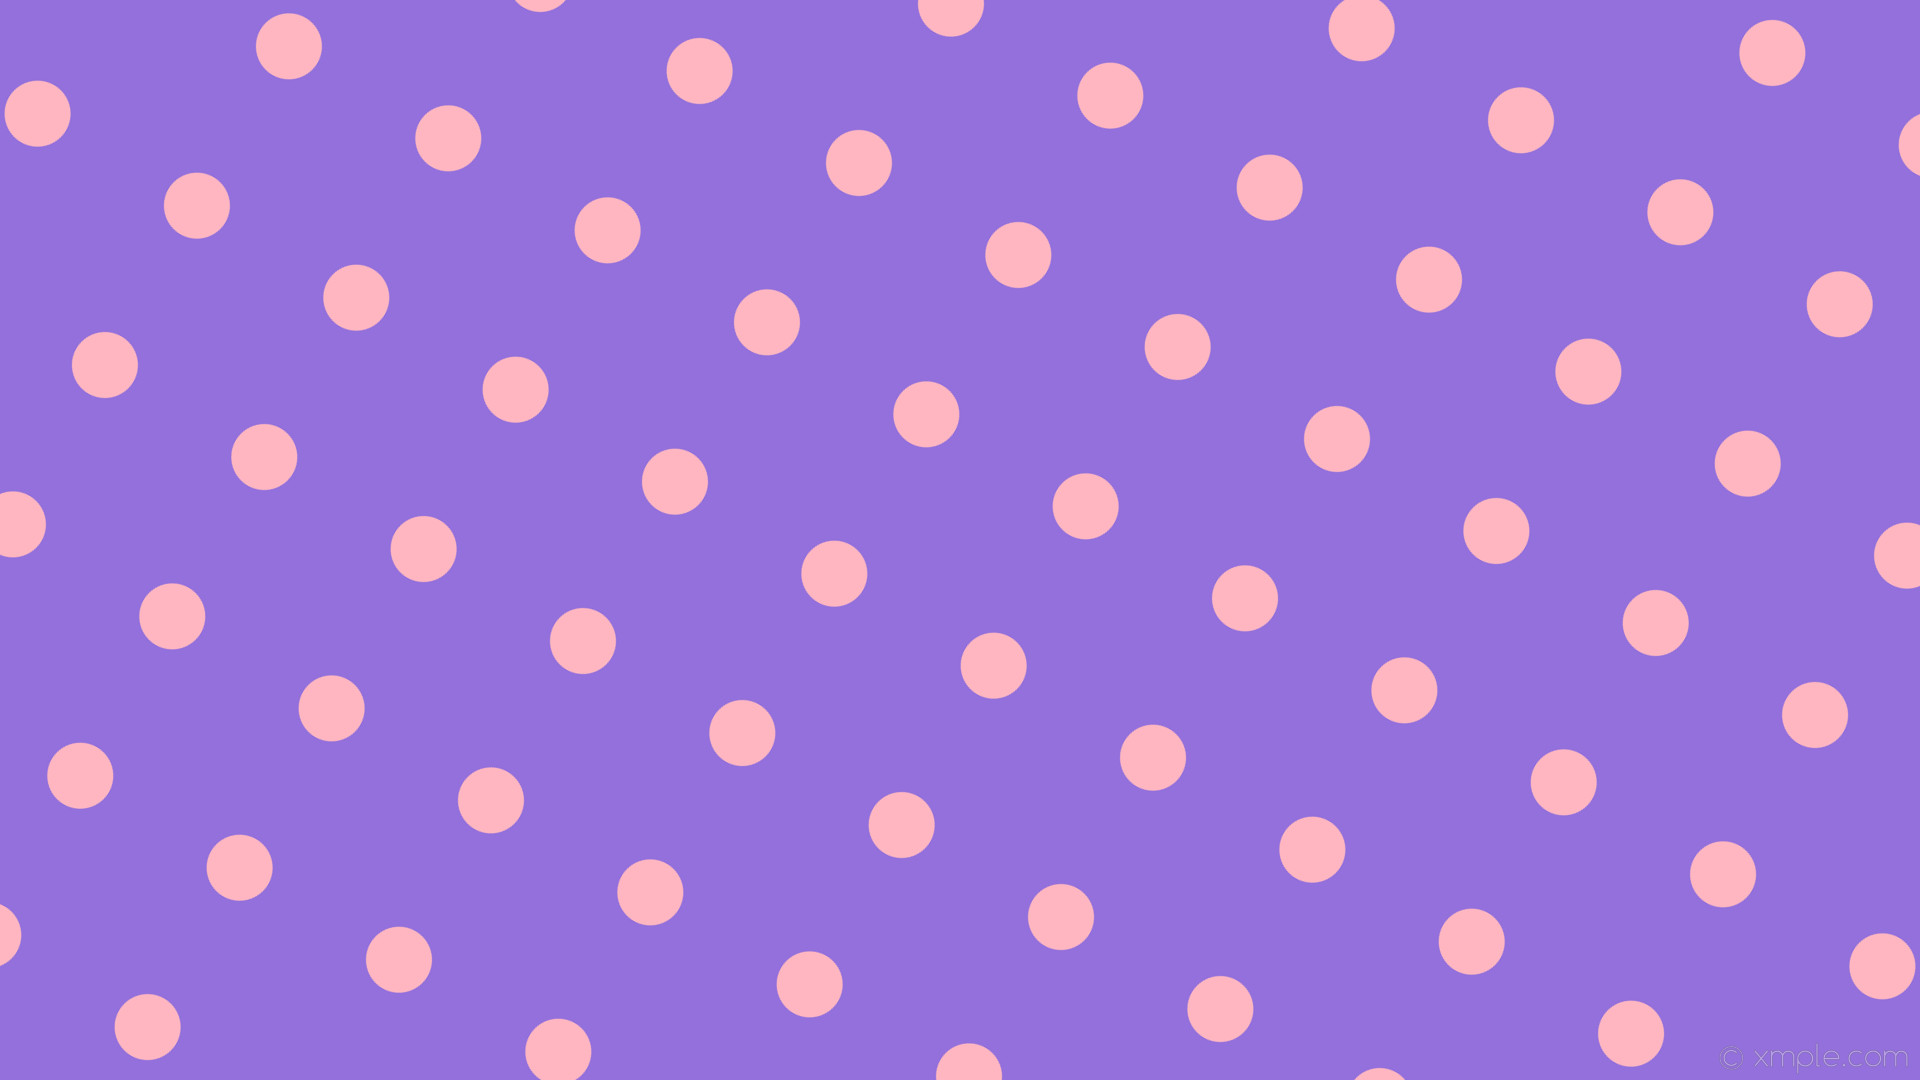 1920x1080 wallpaper spots pink purple polka dots medium purple light pink #9370db  #ffb6c1 60Â°